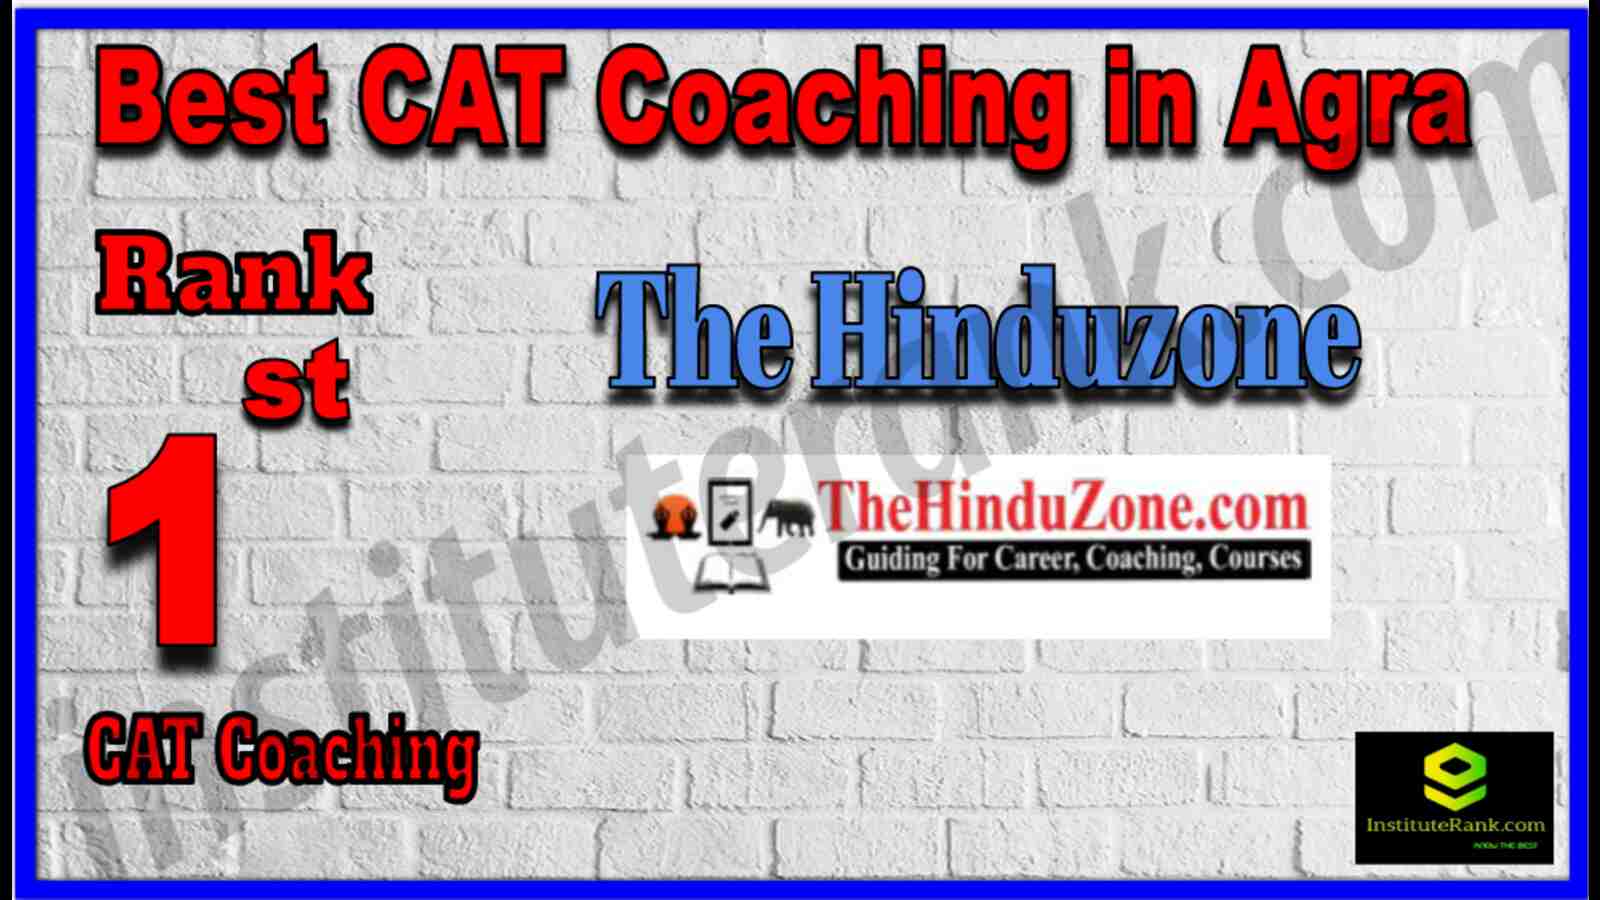 Rank 1 Best CAT Coaching in Agra